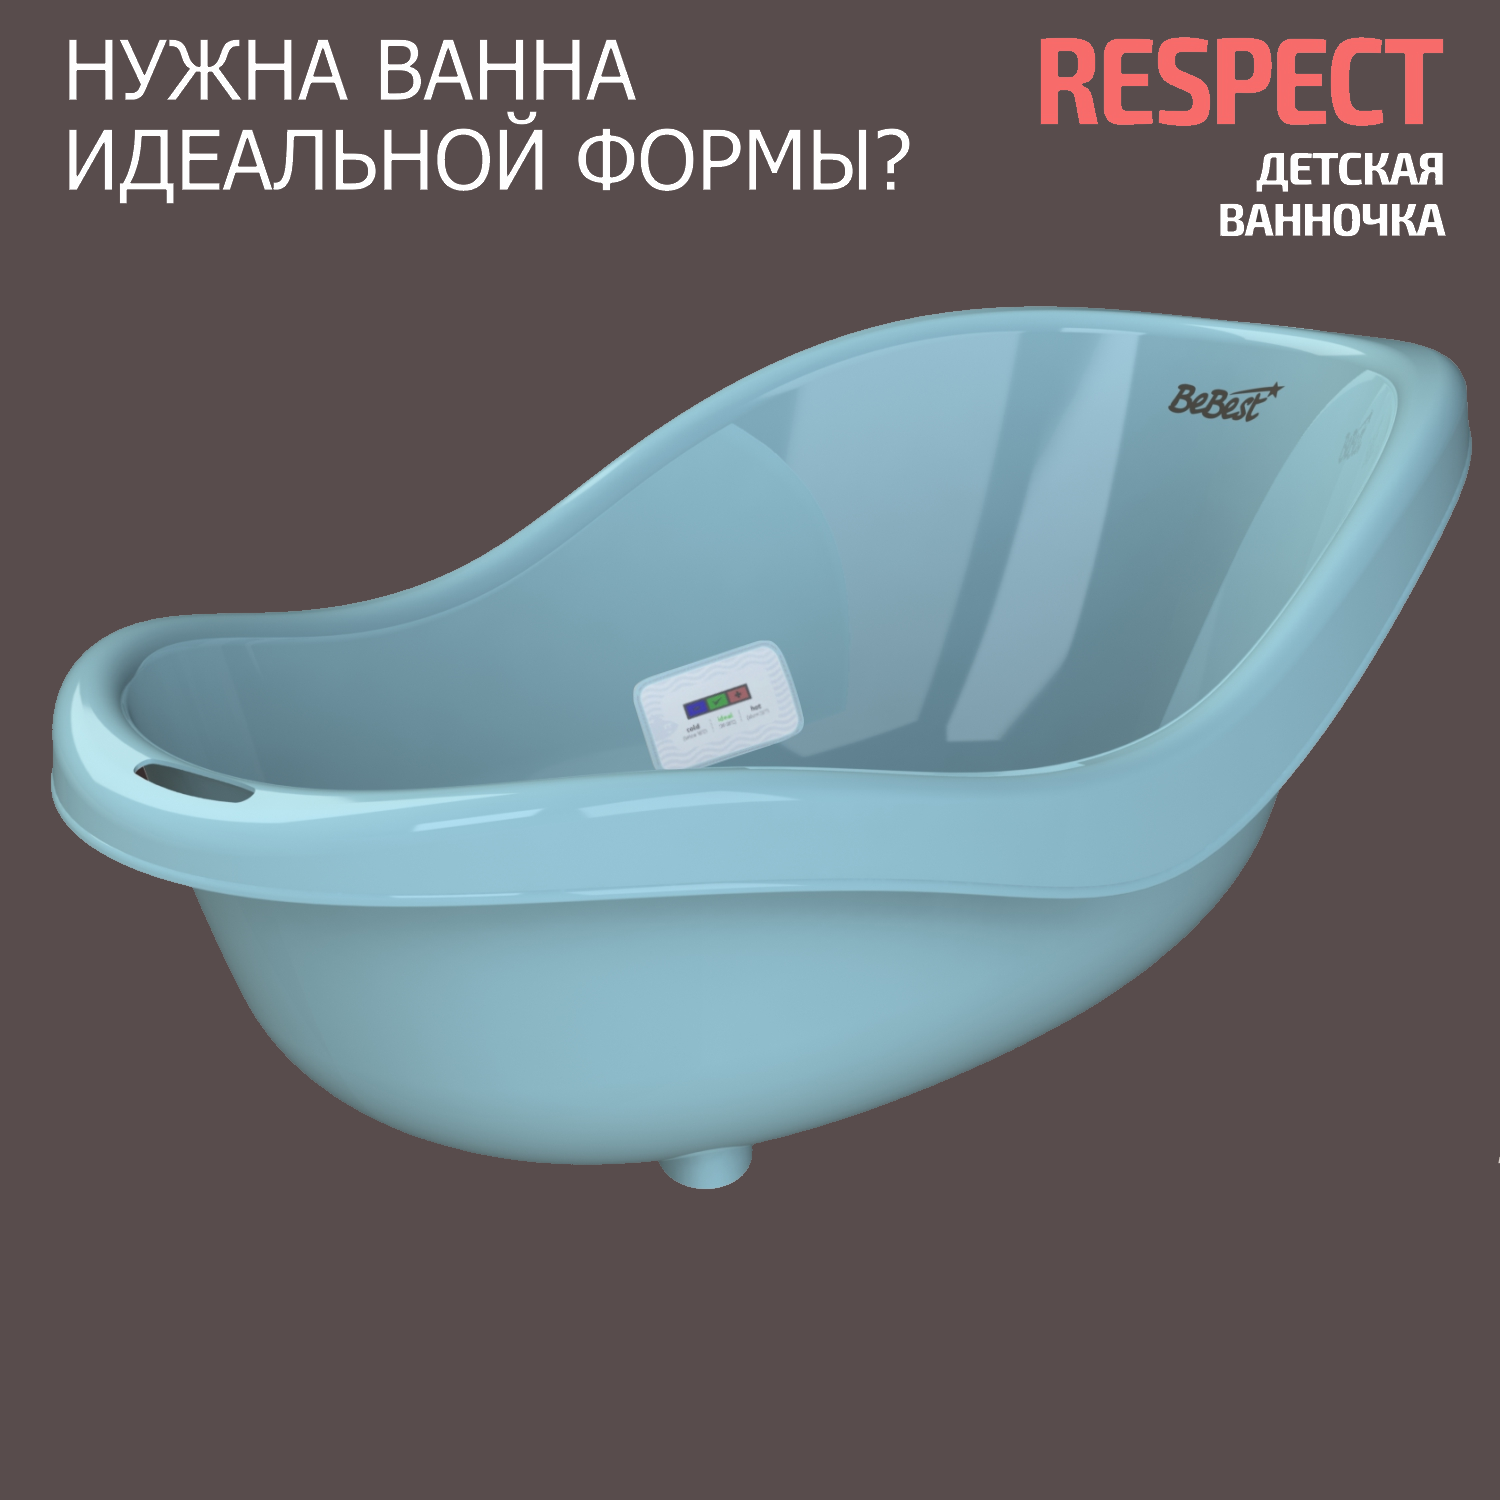 Ванночка для купания новорожденных BeBest Respect с термометром, голубой